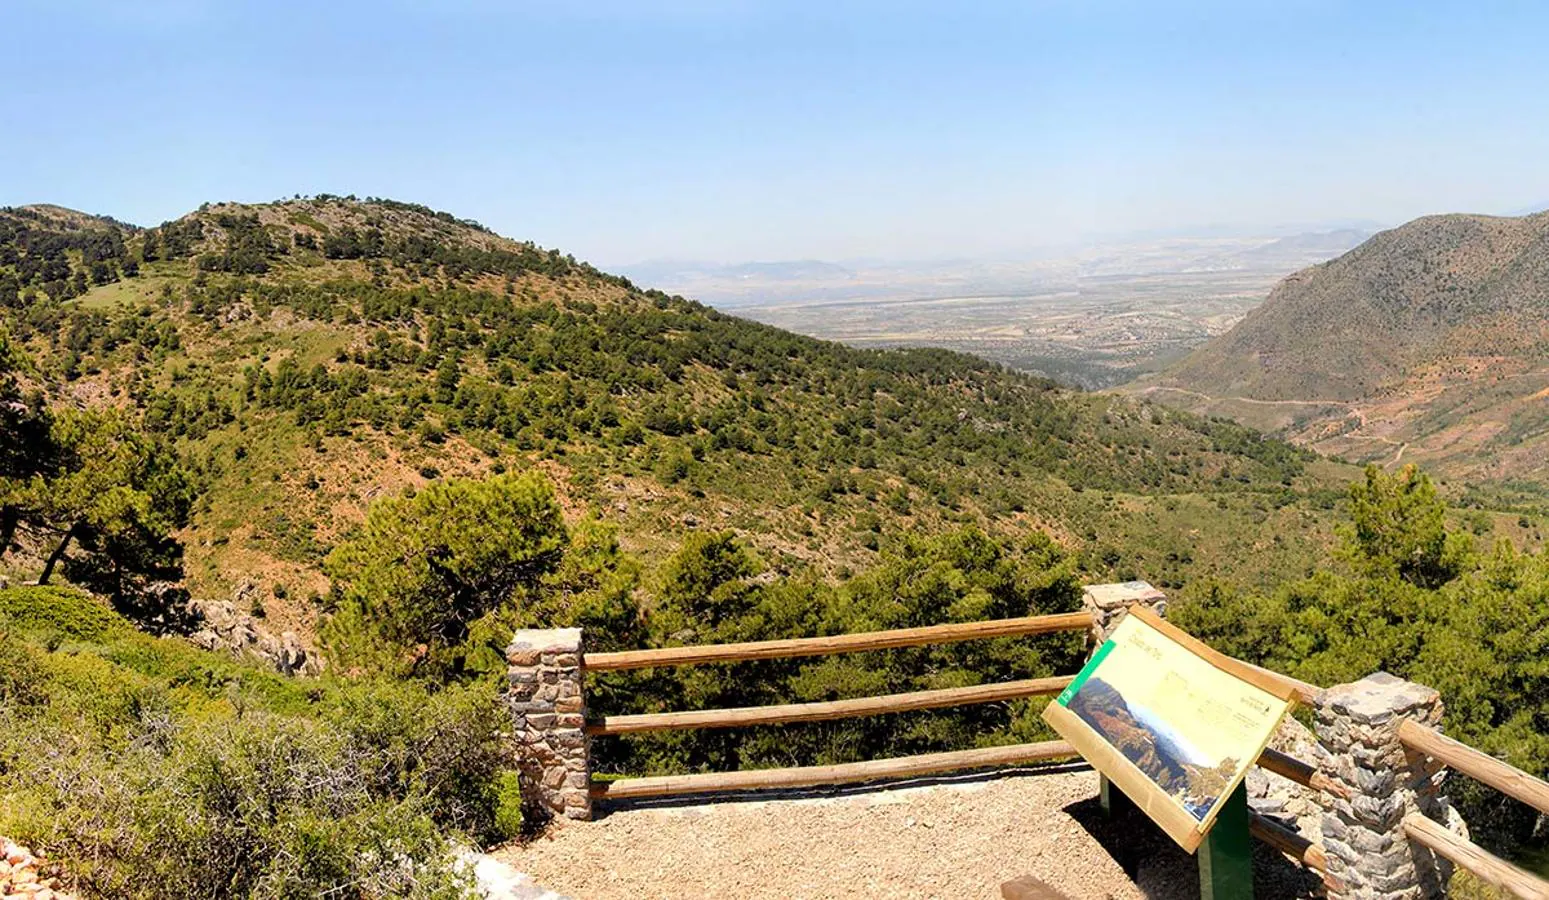 Los espacios naturales se han convertido en una nueva fuente de atracción hacia el medio rural y un aliciente económico para los pueblos. Parque Natural de la Sierra de Baza, Granada